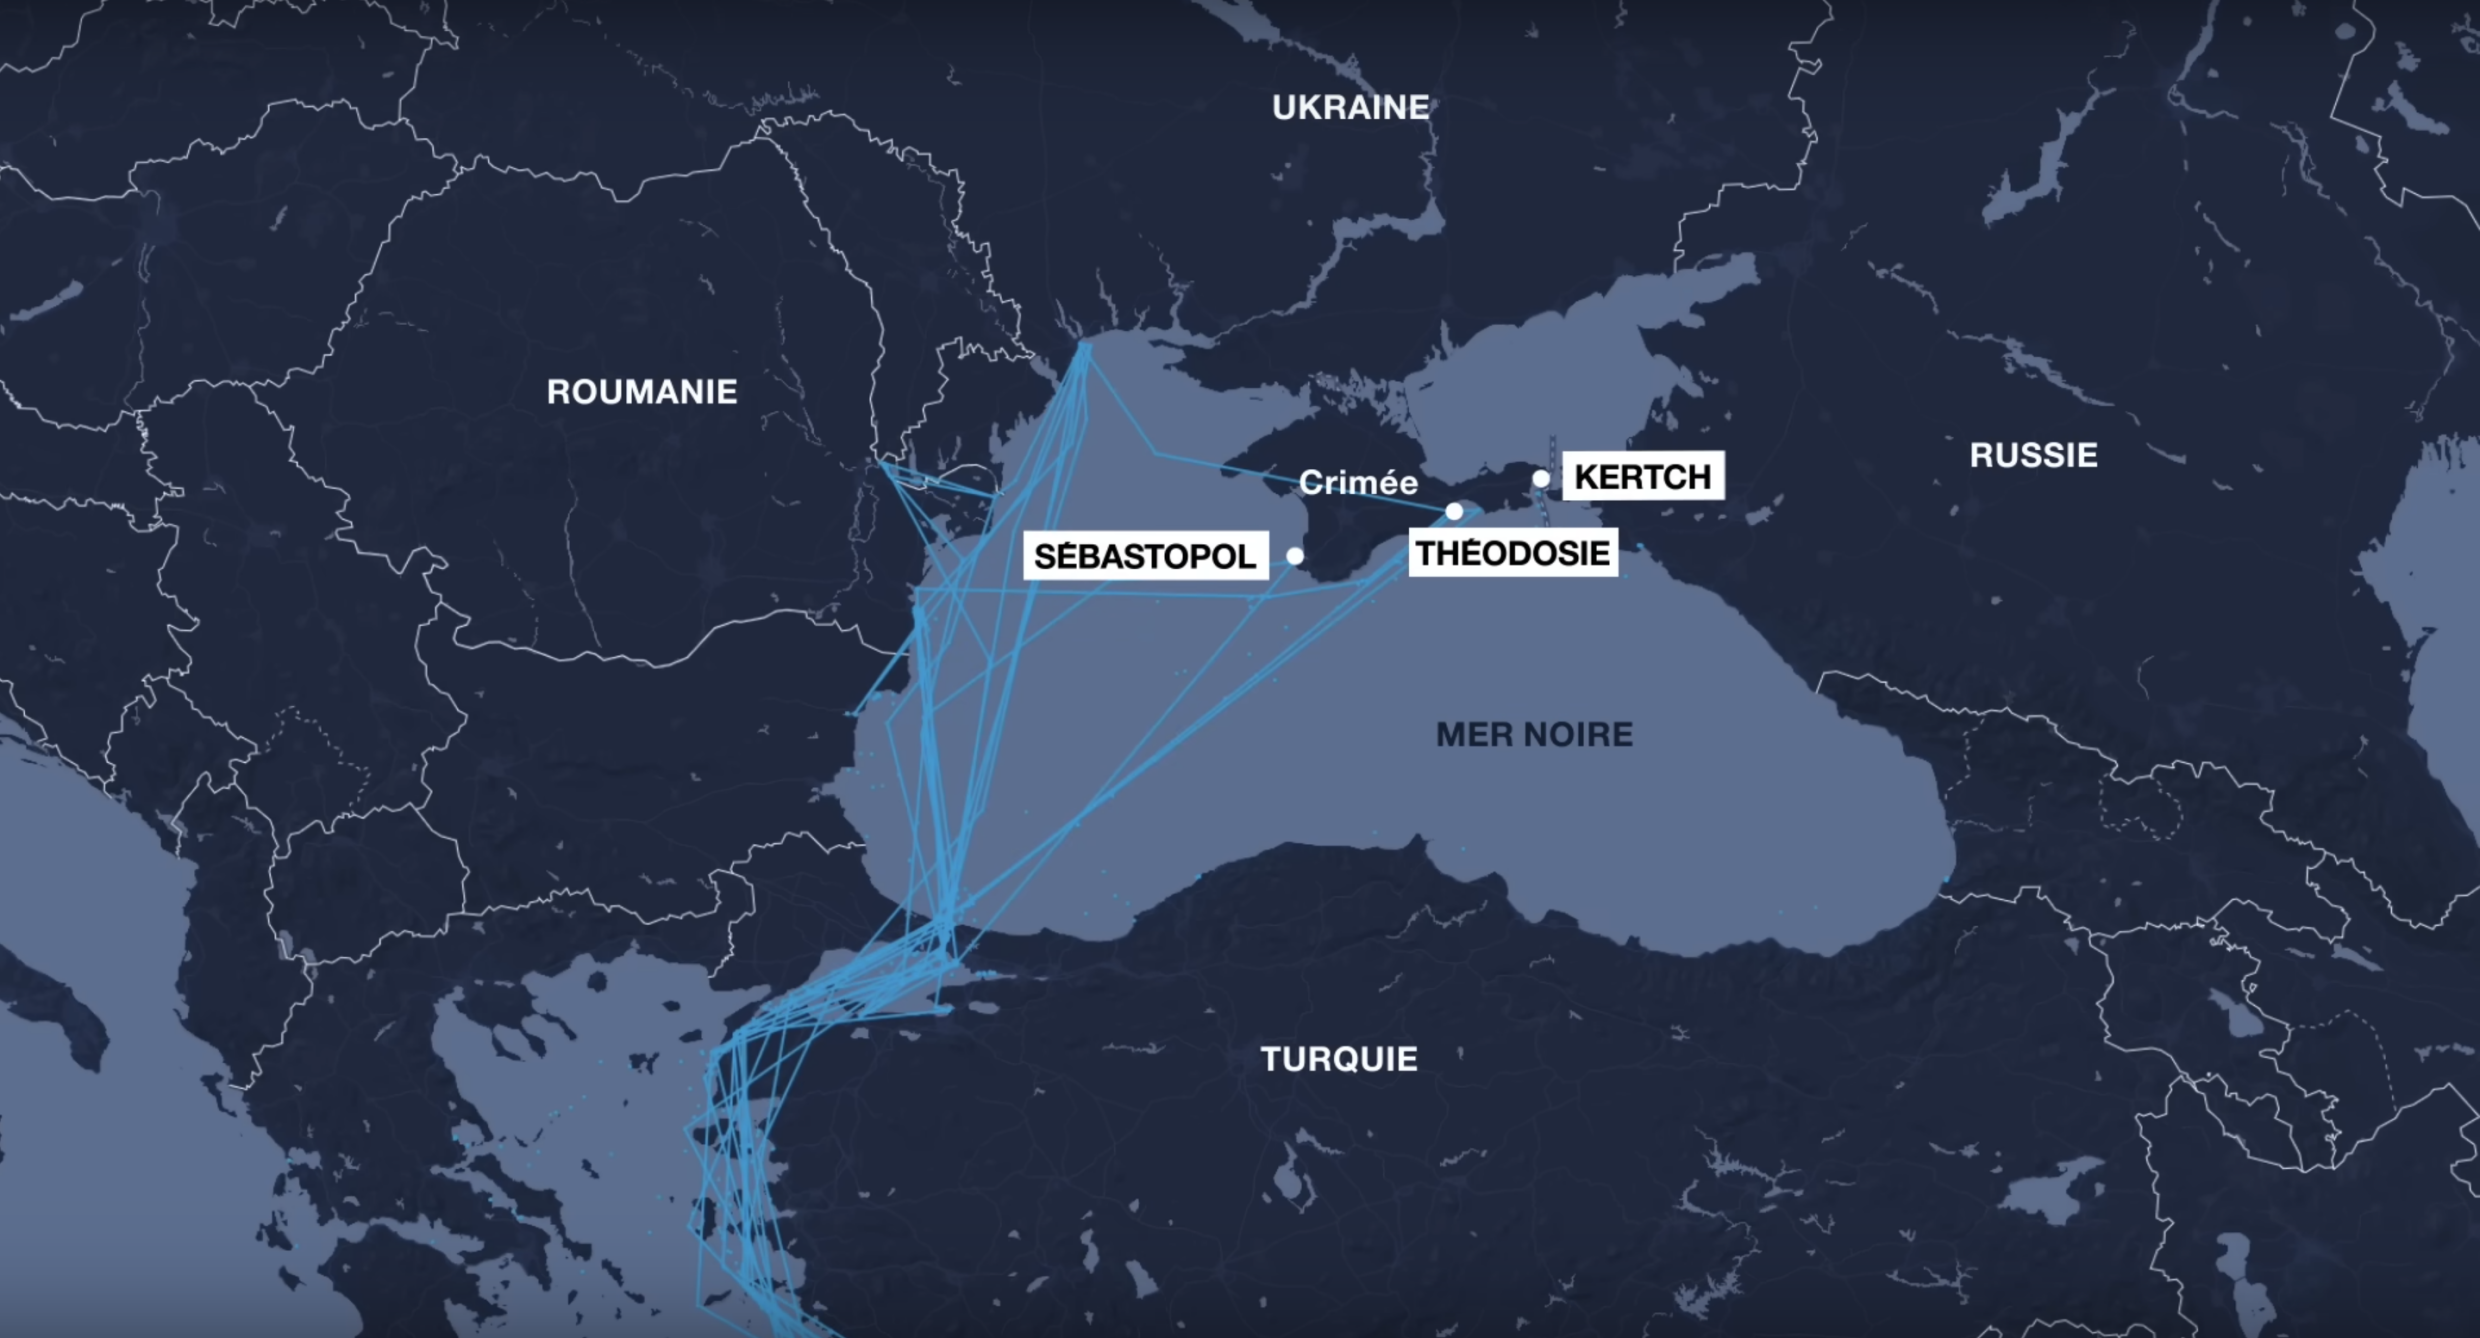 Die Route der Nadalina im Schwarzen Meer zwischen 2016 und 2019 zeigt, dass sie regelmäßig Besuche im sogenannten Schwarzen Meer machte "geschlossen" Häfen der Halbinsel Krim wurden nach Ru mit internationalen Sanktionen belegt